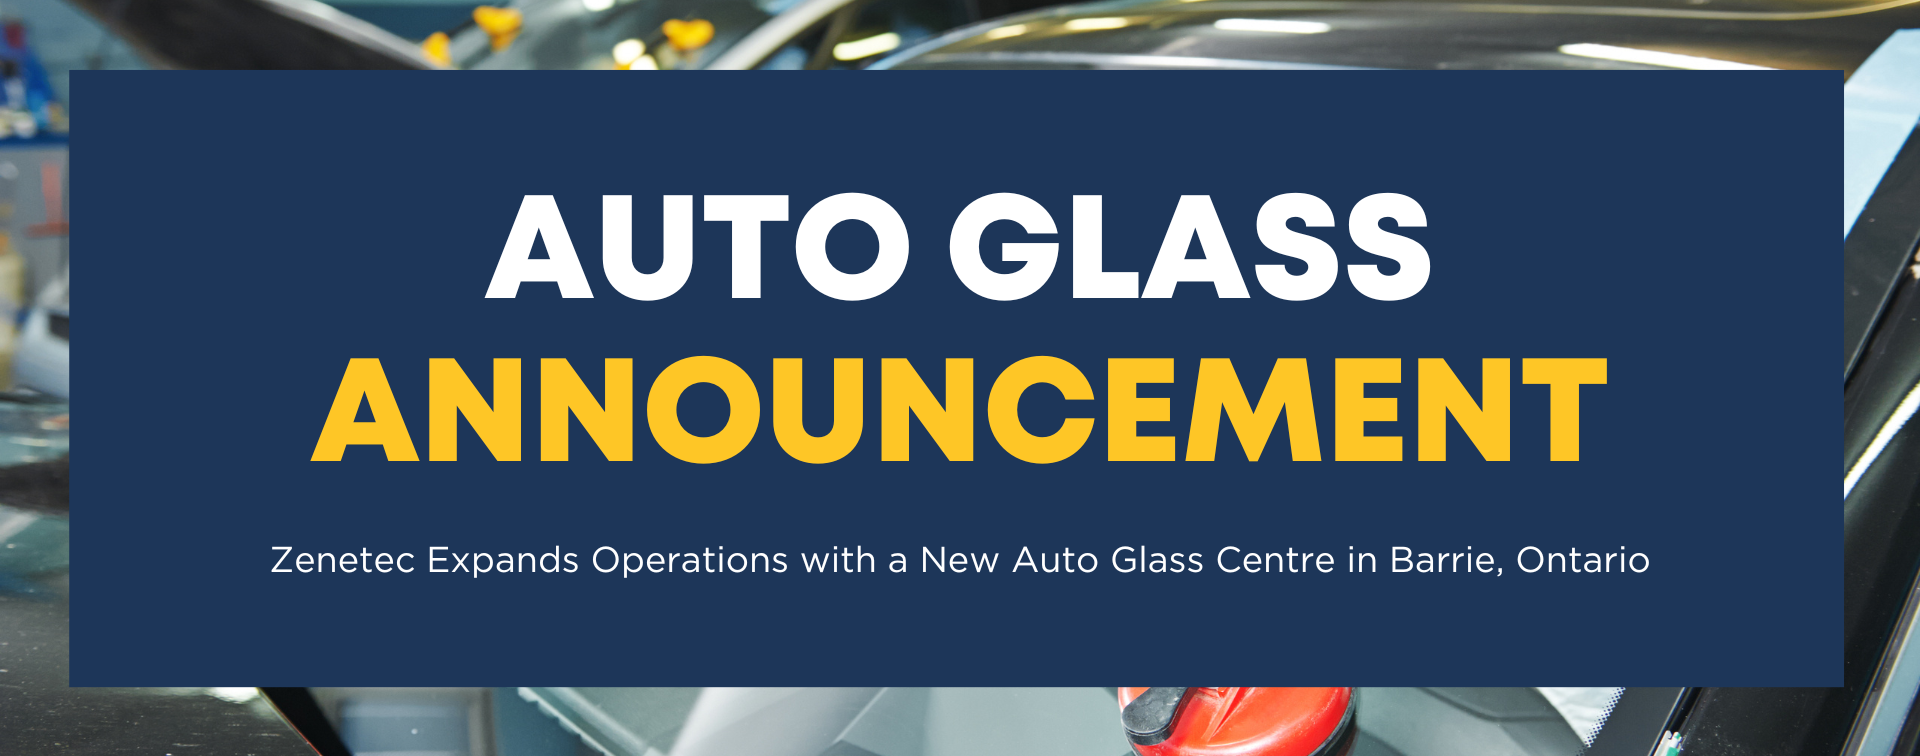 Auto Glass Announcement